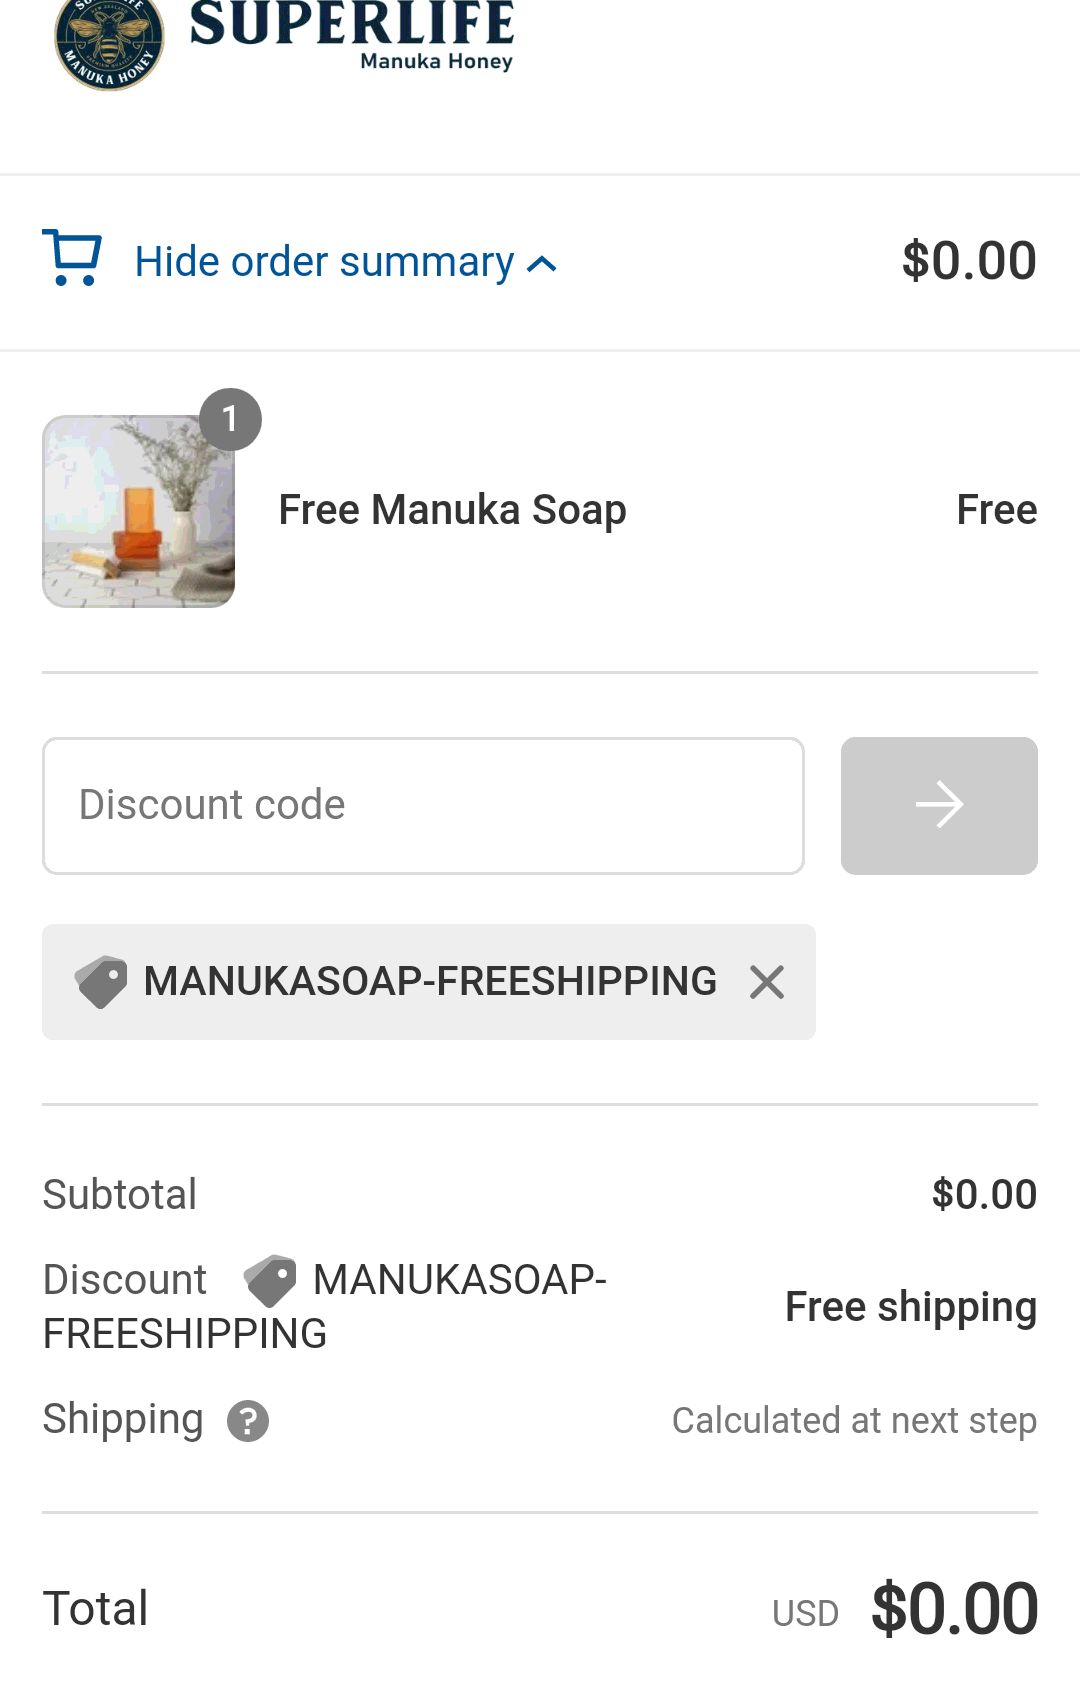 免费肥皂 Information - Superlife Manuka - Checkout